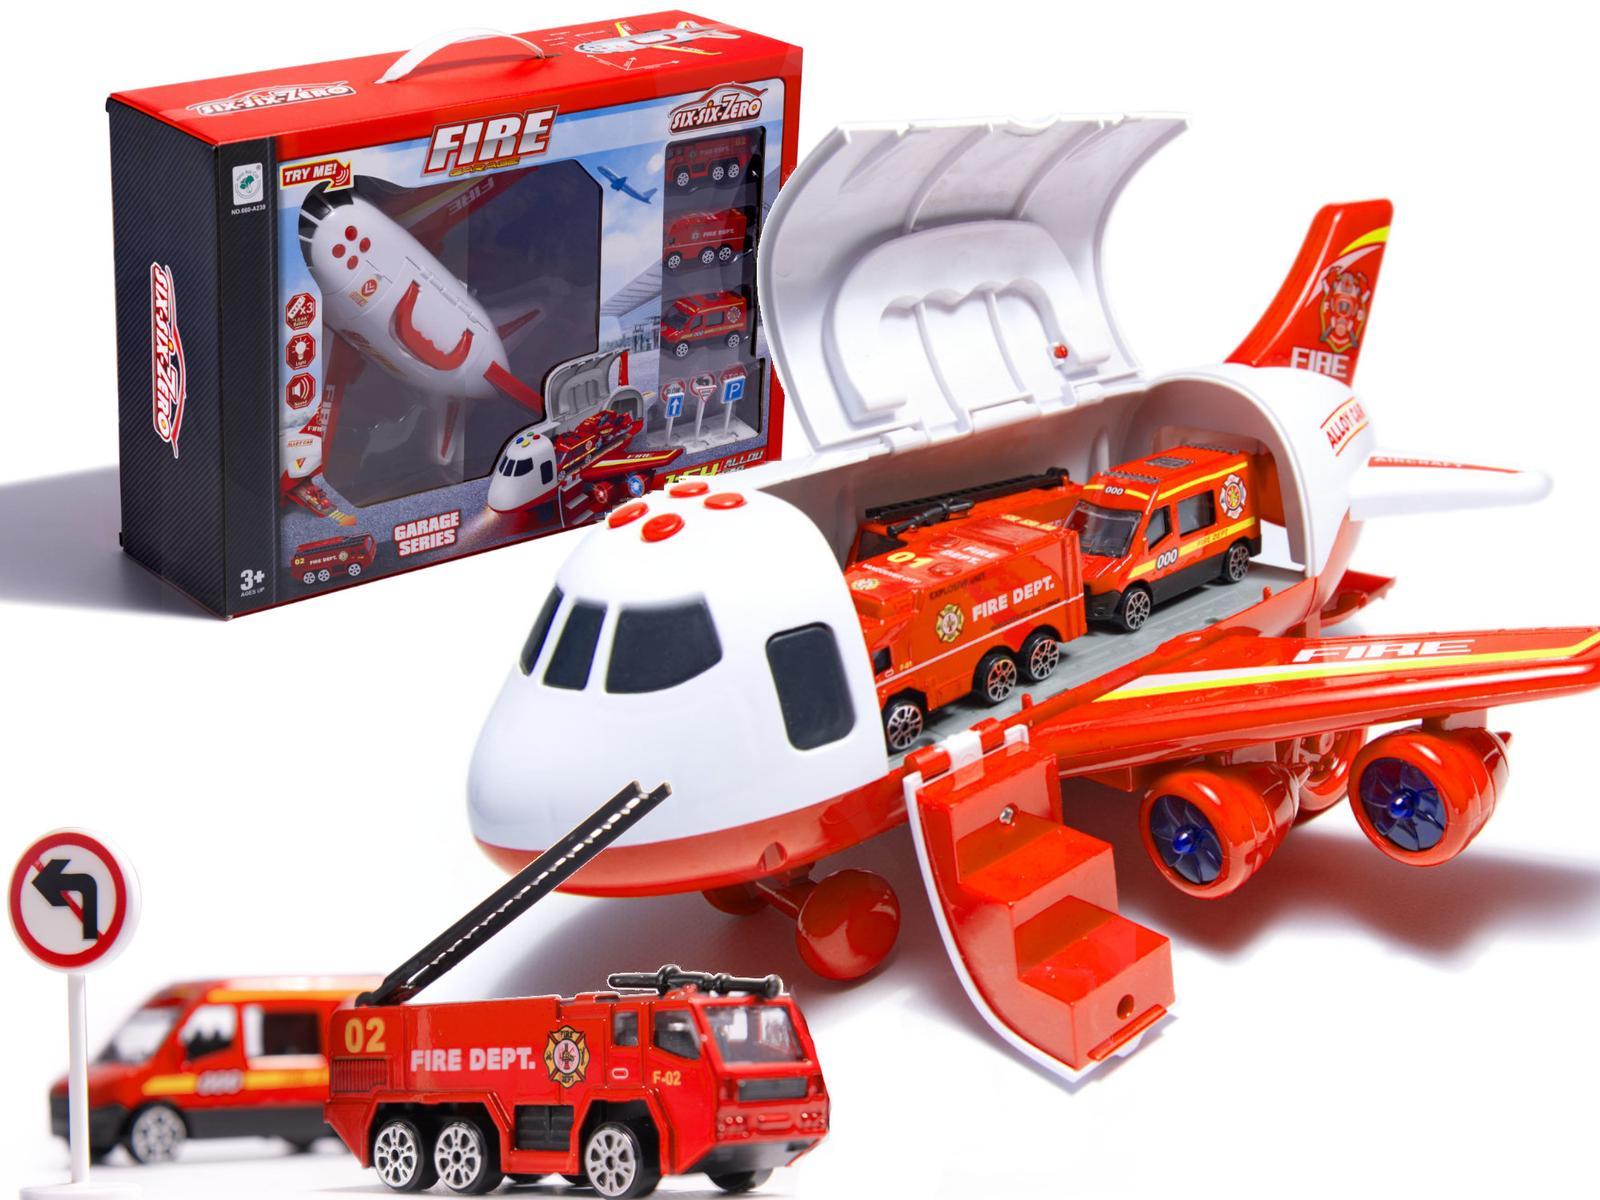 Transporter samolot + 3 pojazdy straż pożarna zabawka dla dzieci czerwona 41,5x31,5x14 cm nr. 7